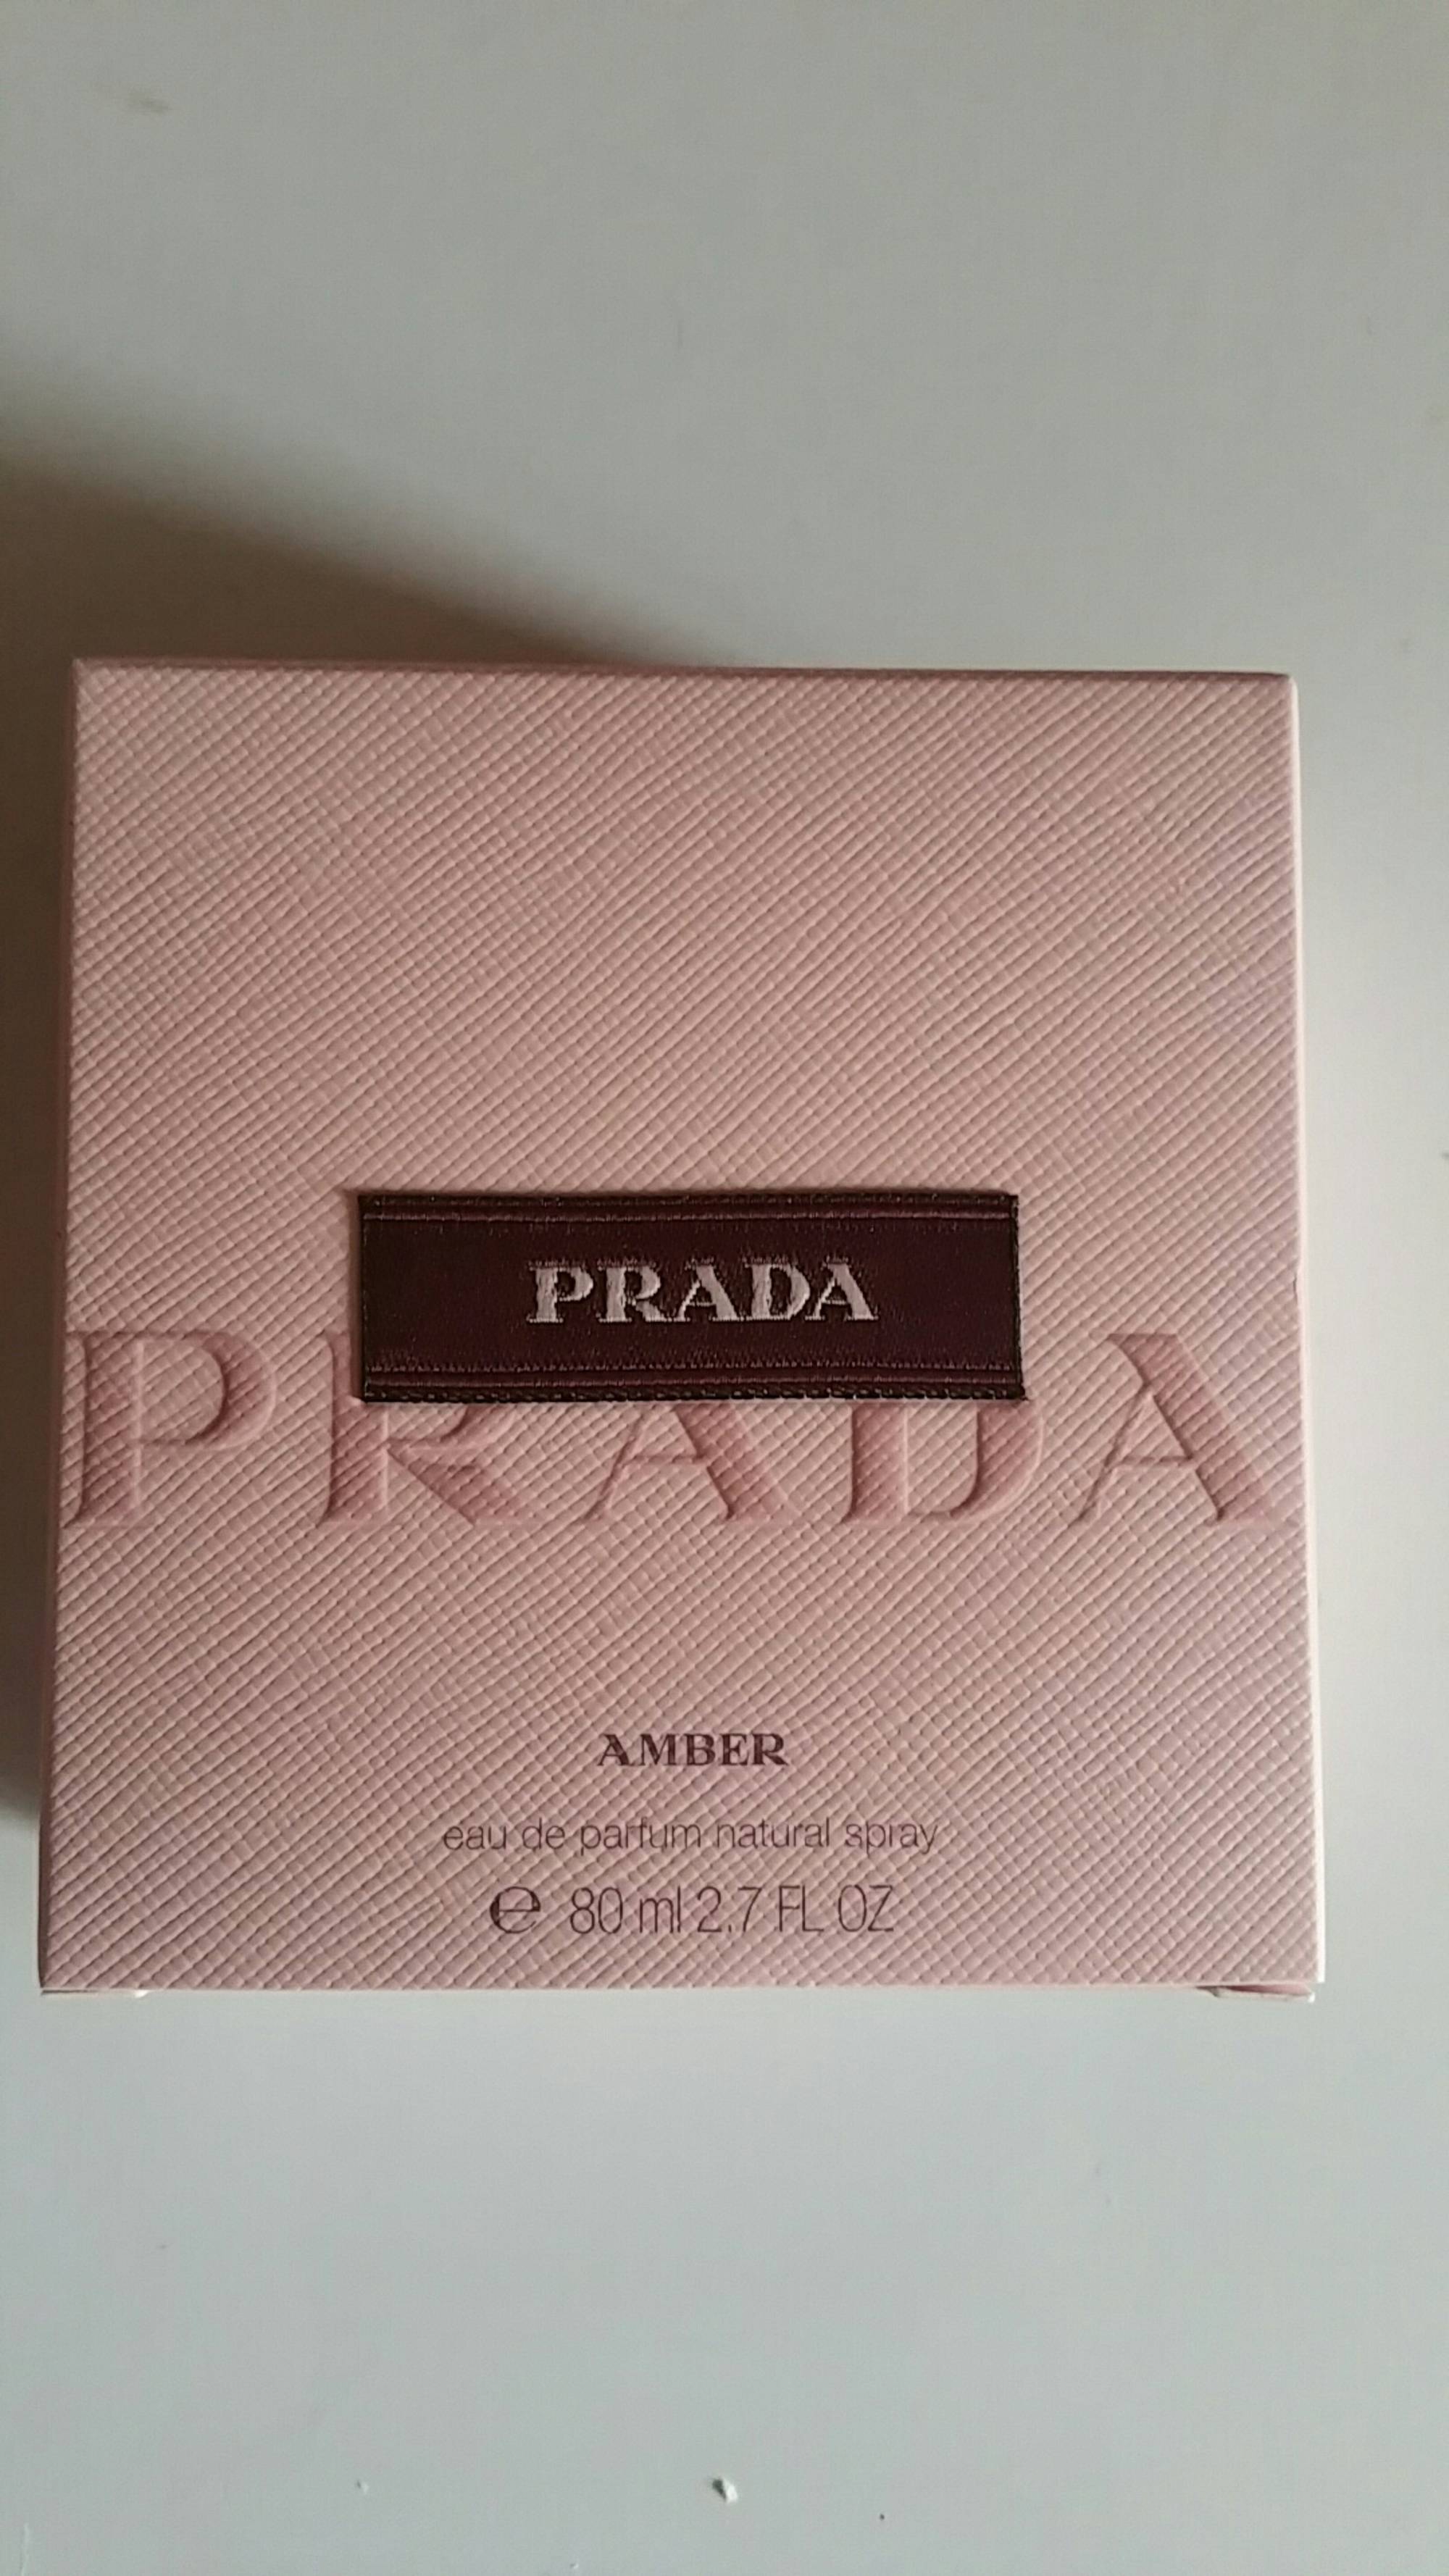 PRADA - Amber - Eau de parfum natural spray